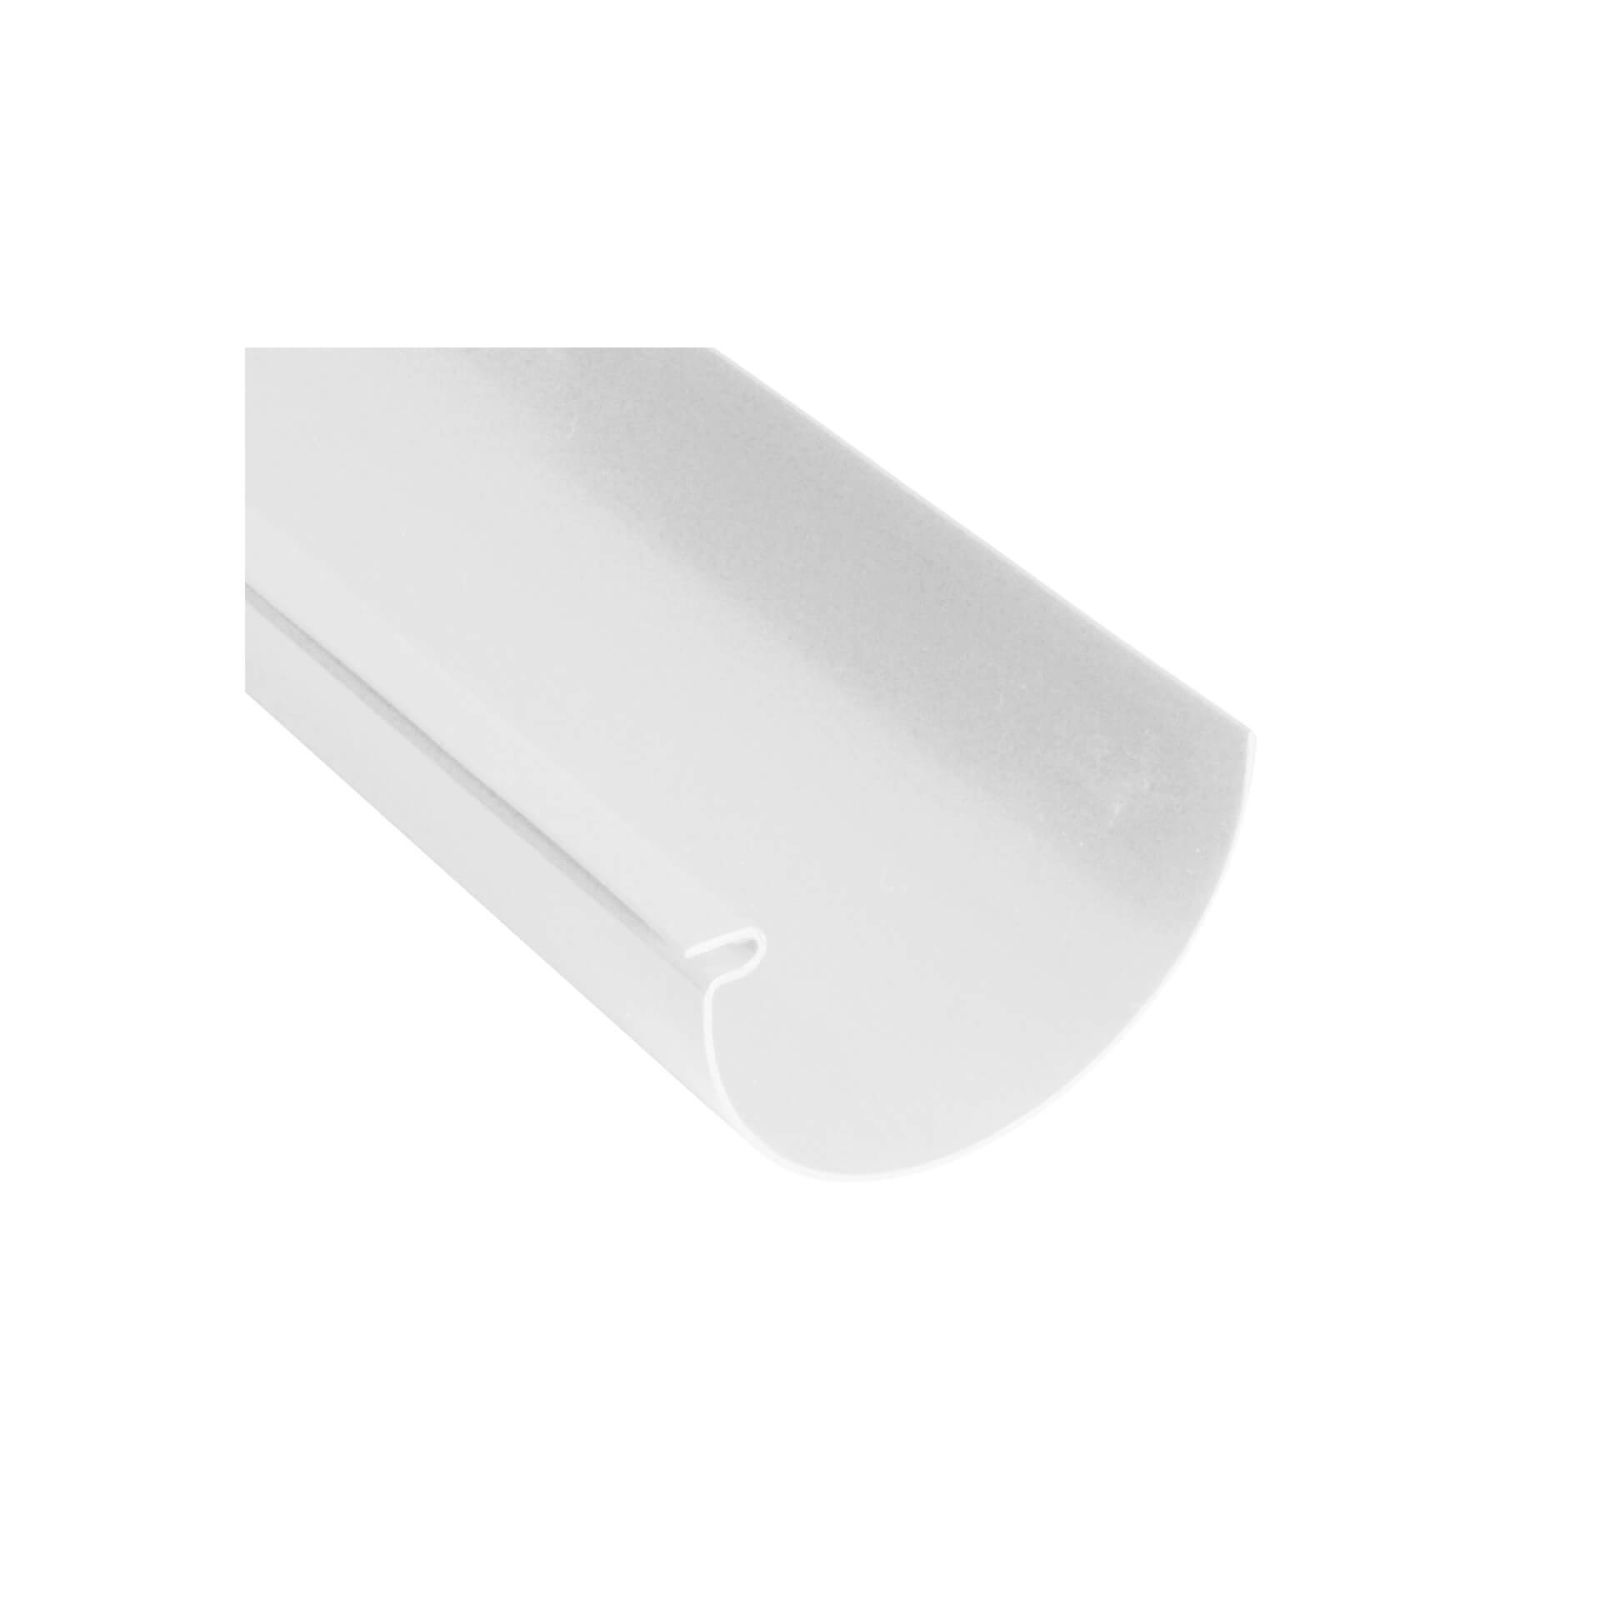 Kunststoff Dachrinnen Sparpaket 6 m | Ø 125/90 mm | Farbe Weiß